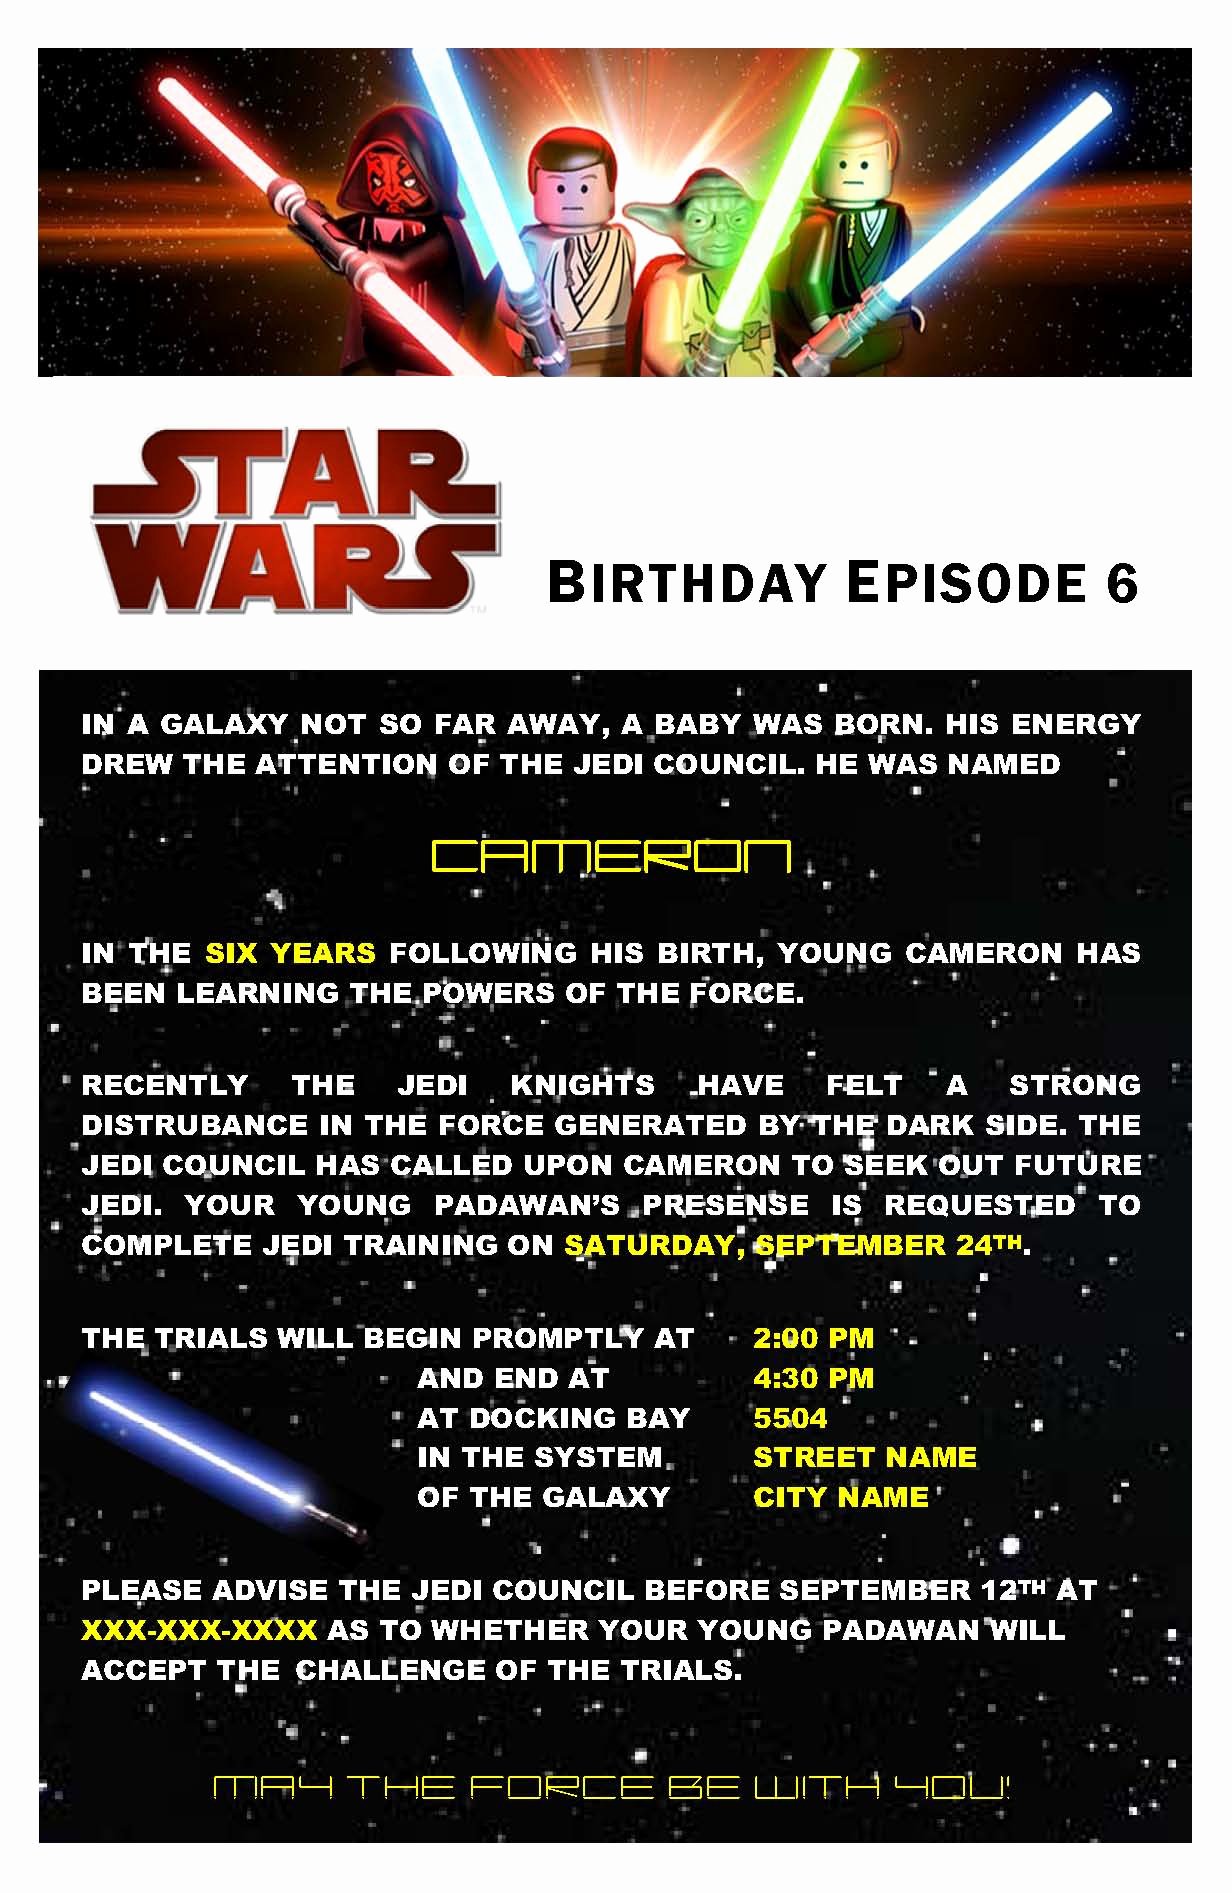 Star Wars Birthday Invitations Elegant Star Wars Birthday Party